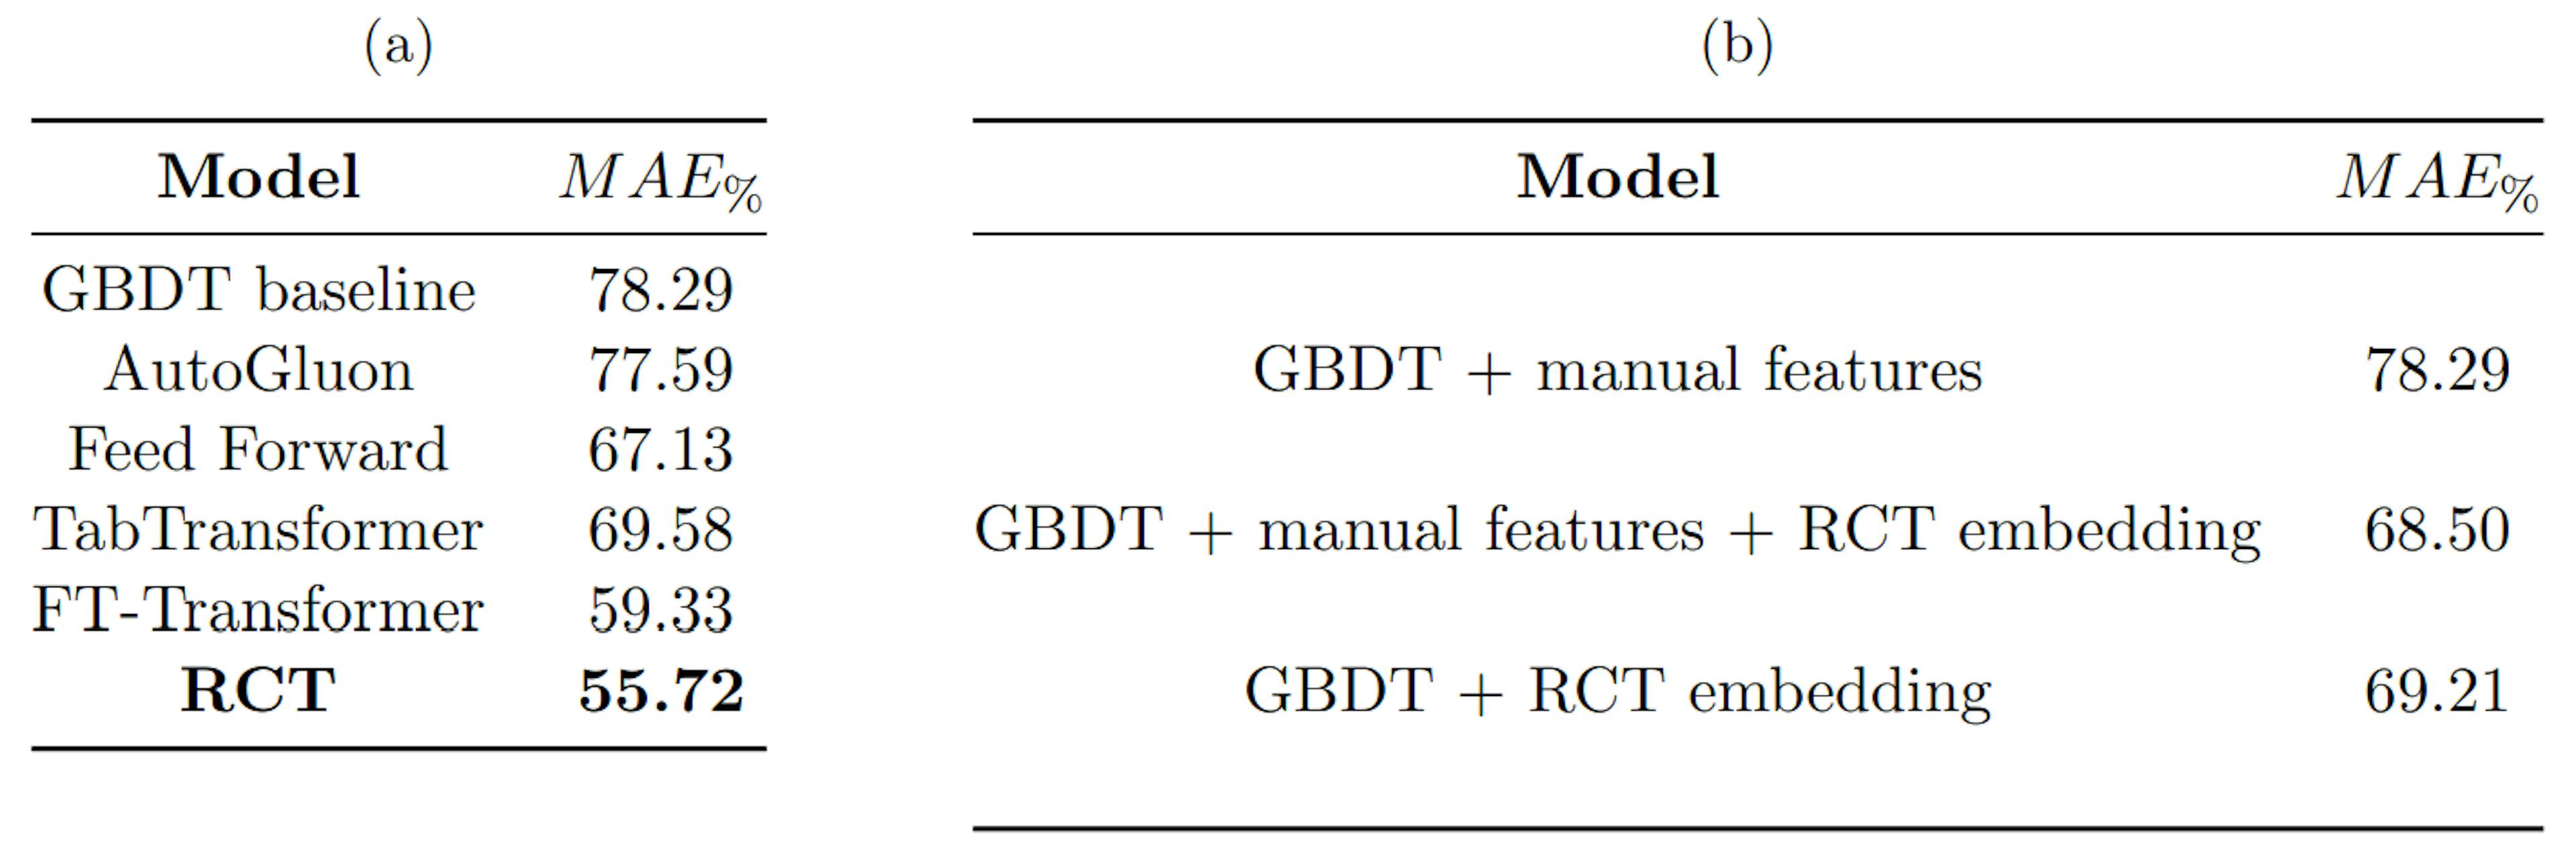 Tabla 1: (a) compara el rendimiento del RCT con varios puntos de referencia, (b) compara el rendimiento de la línea de base de GBDT con GBDT entrenado con incorporaciones de RCT. El MAE% se calcula como se muestra en la Ecuación 4.